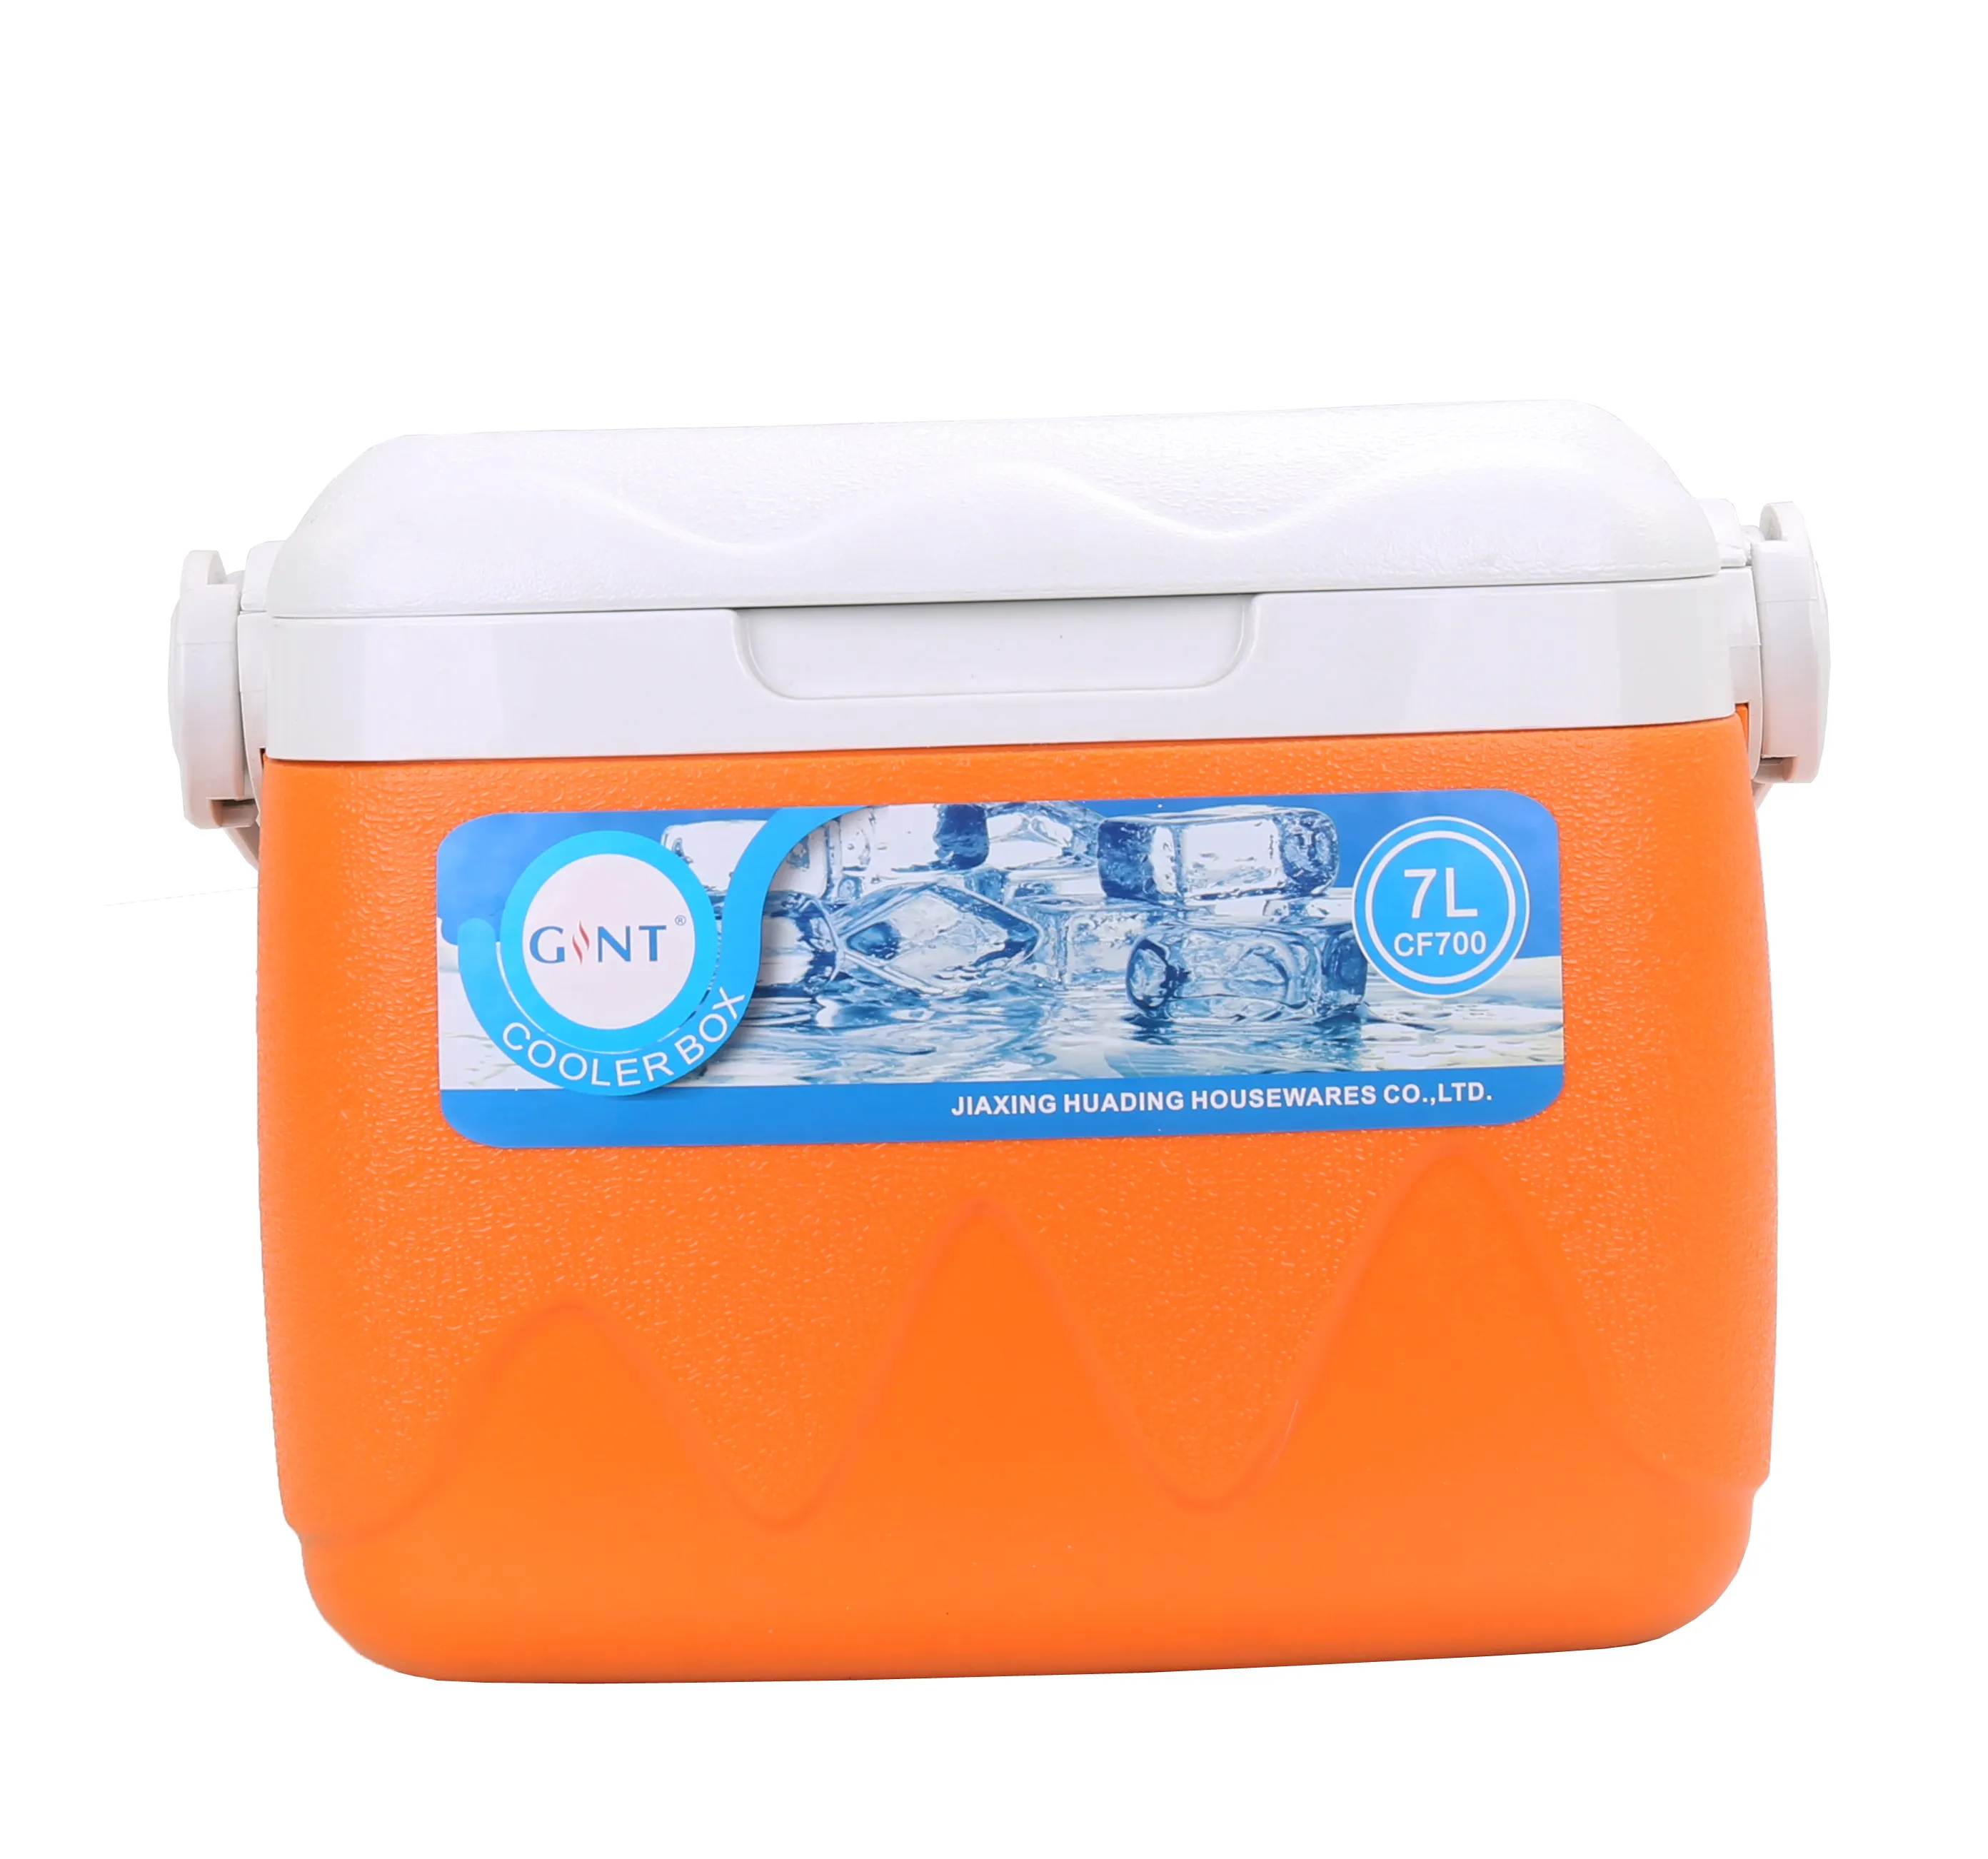 Hot bán Giao hàng nhanh uống 7L hữu ích mini du lịch lạnh Băng hộp mỹ phẩm Cooler Box 7L